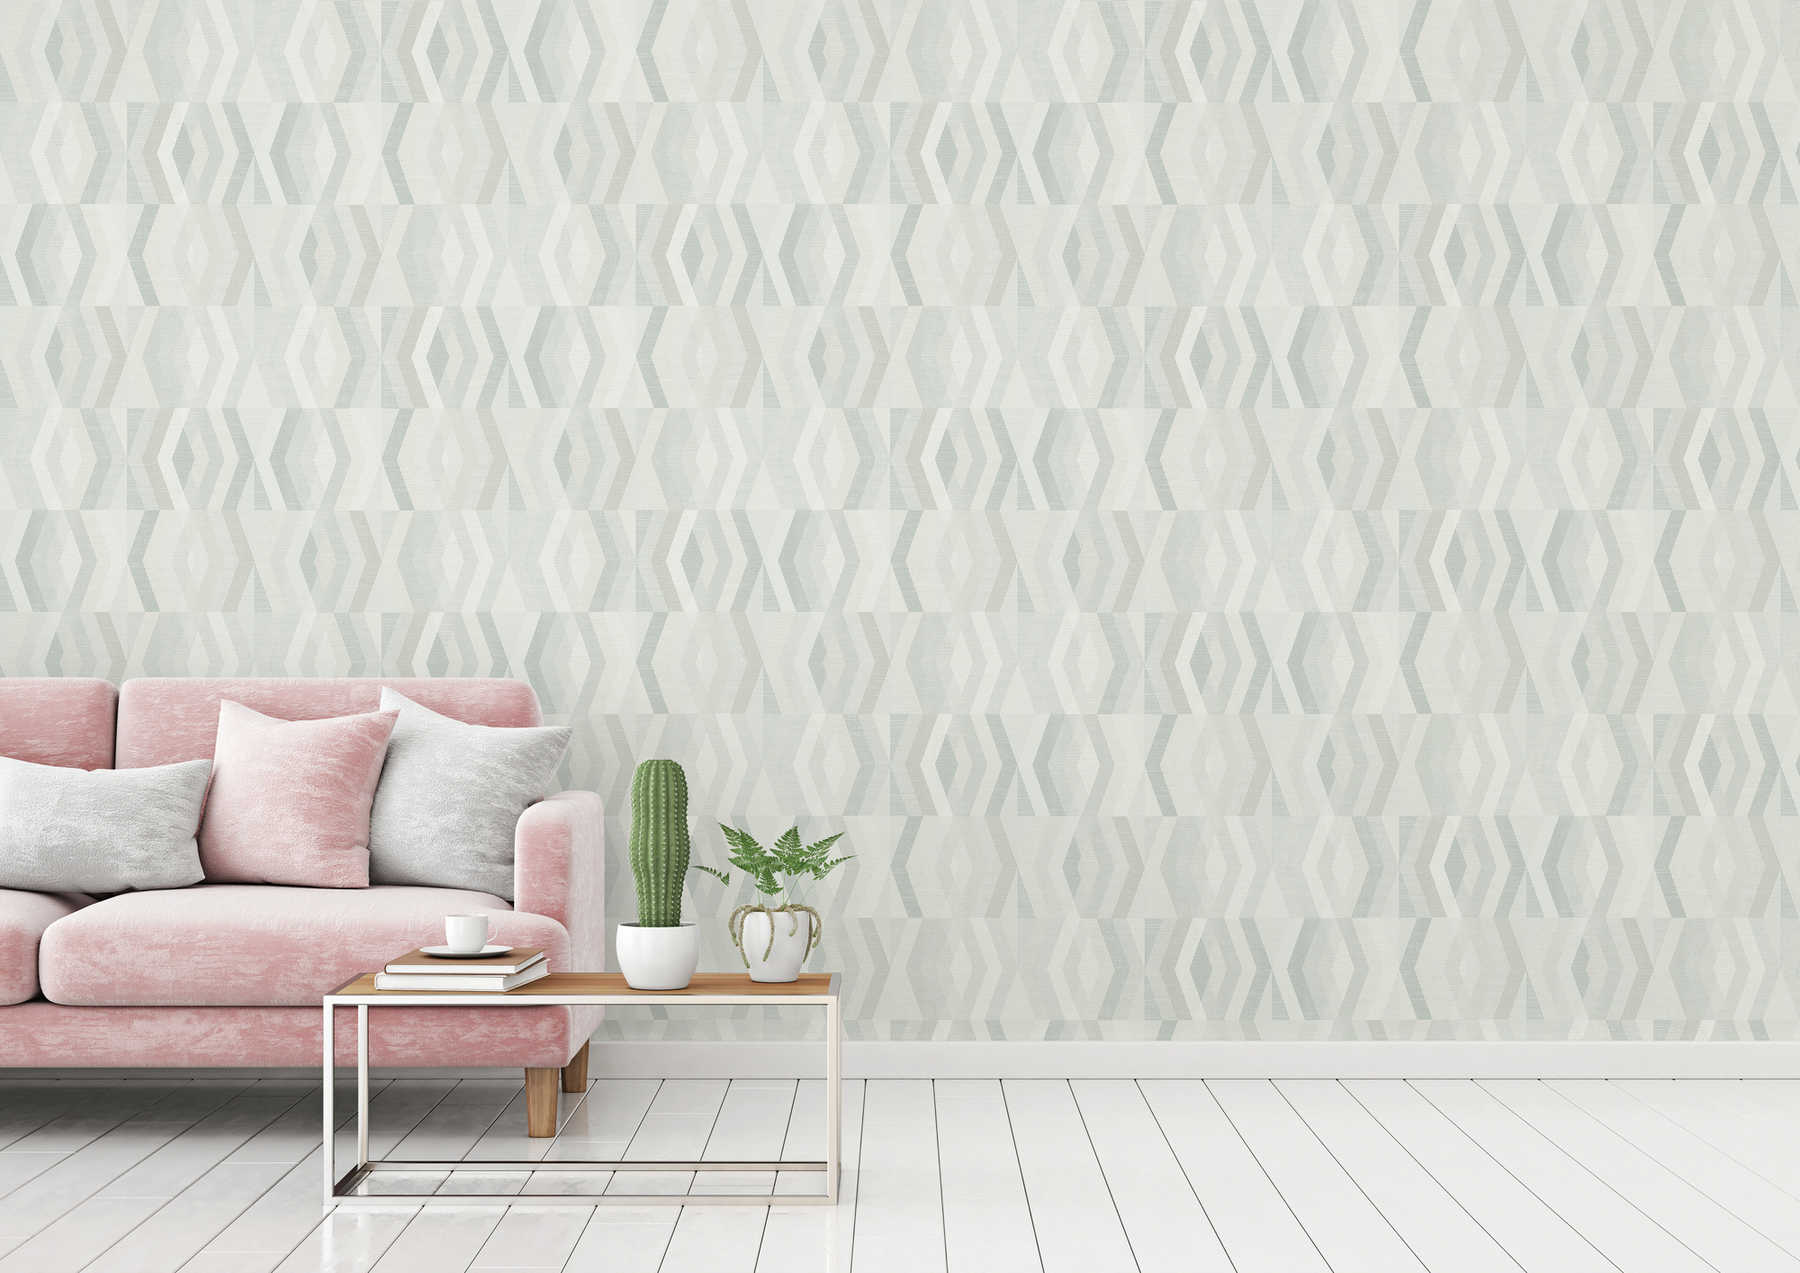             Behang in Scandinavische stijl met geometrisch patroon - grijs, beige
        